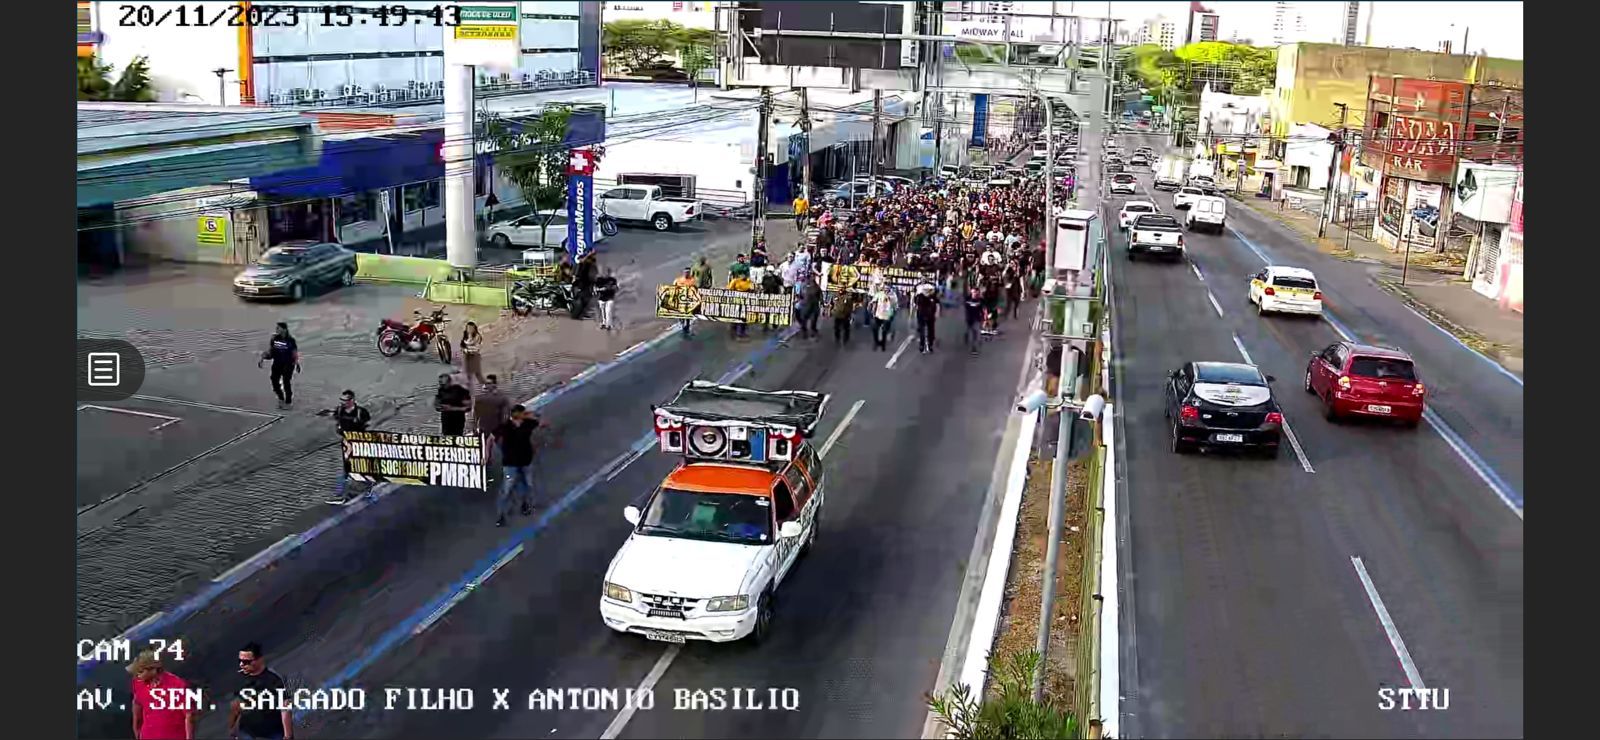 Bombeiros e policiais militares se reúnem em protesto na avenida Salgado Filho, em Natal